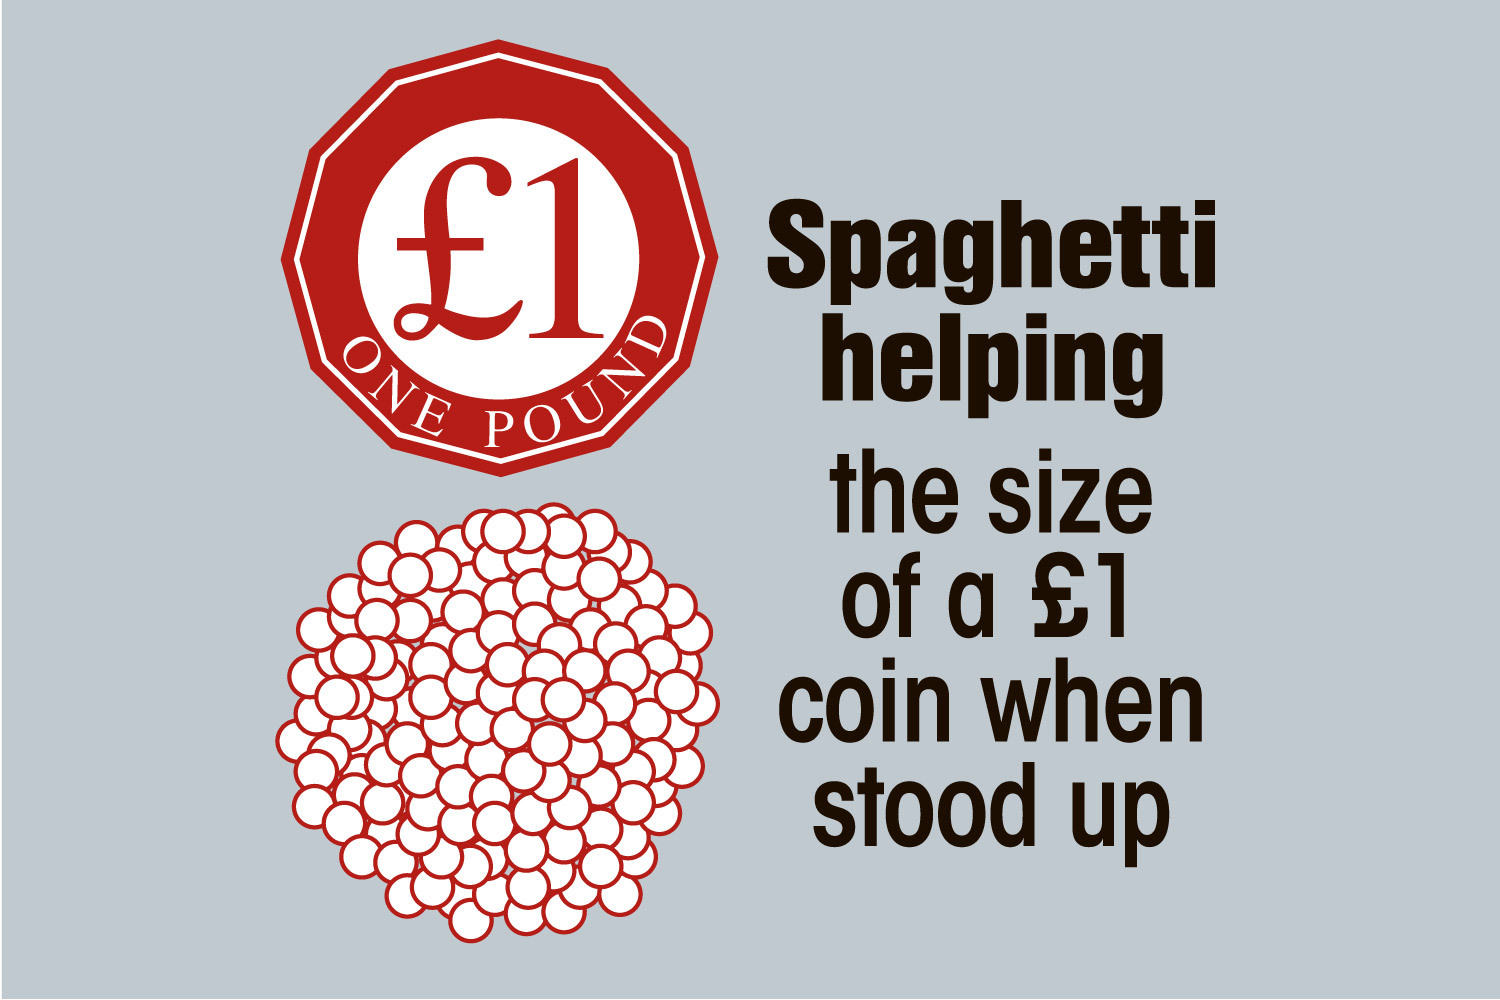 Eine Portion Spaghetti sollte aufrecht die Größe einer 1-Pfund-Münze haben